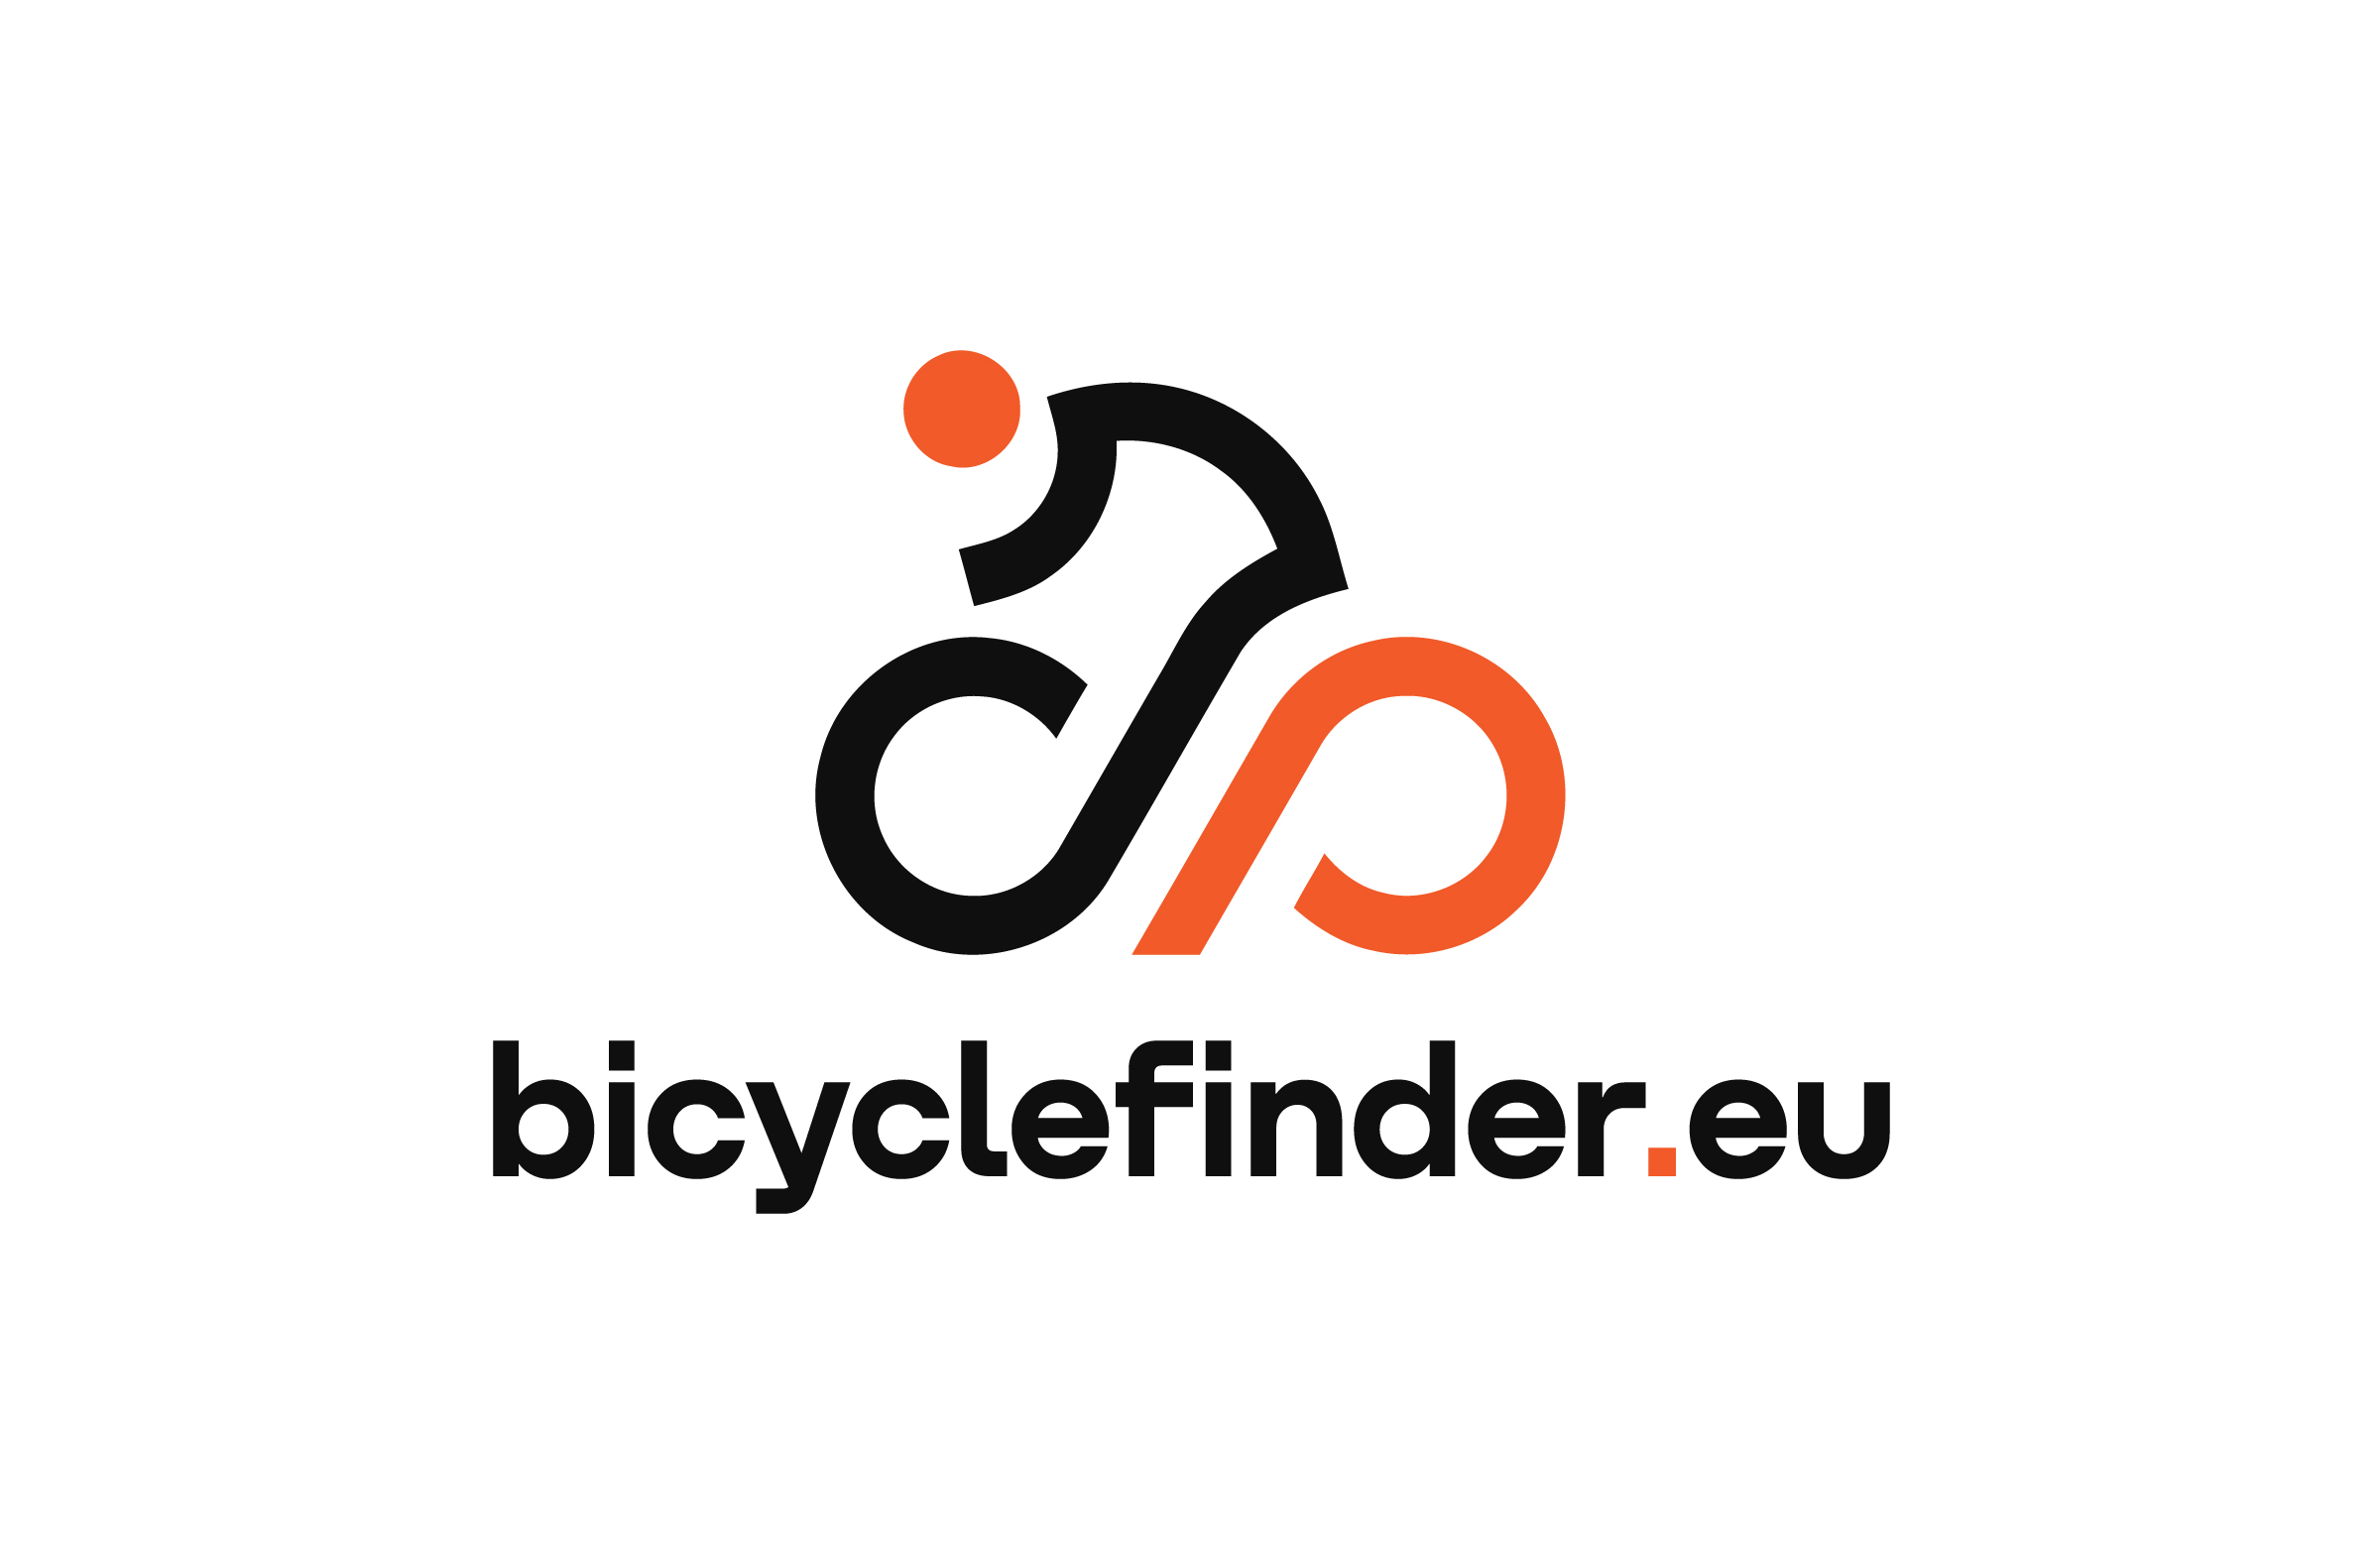 www.bicyclefinder.eu